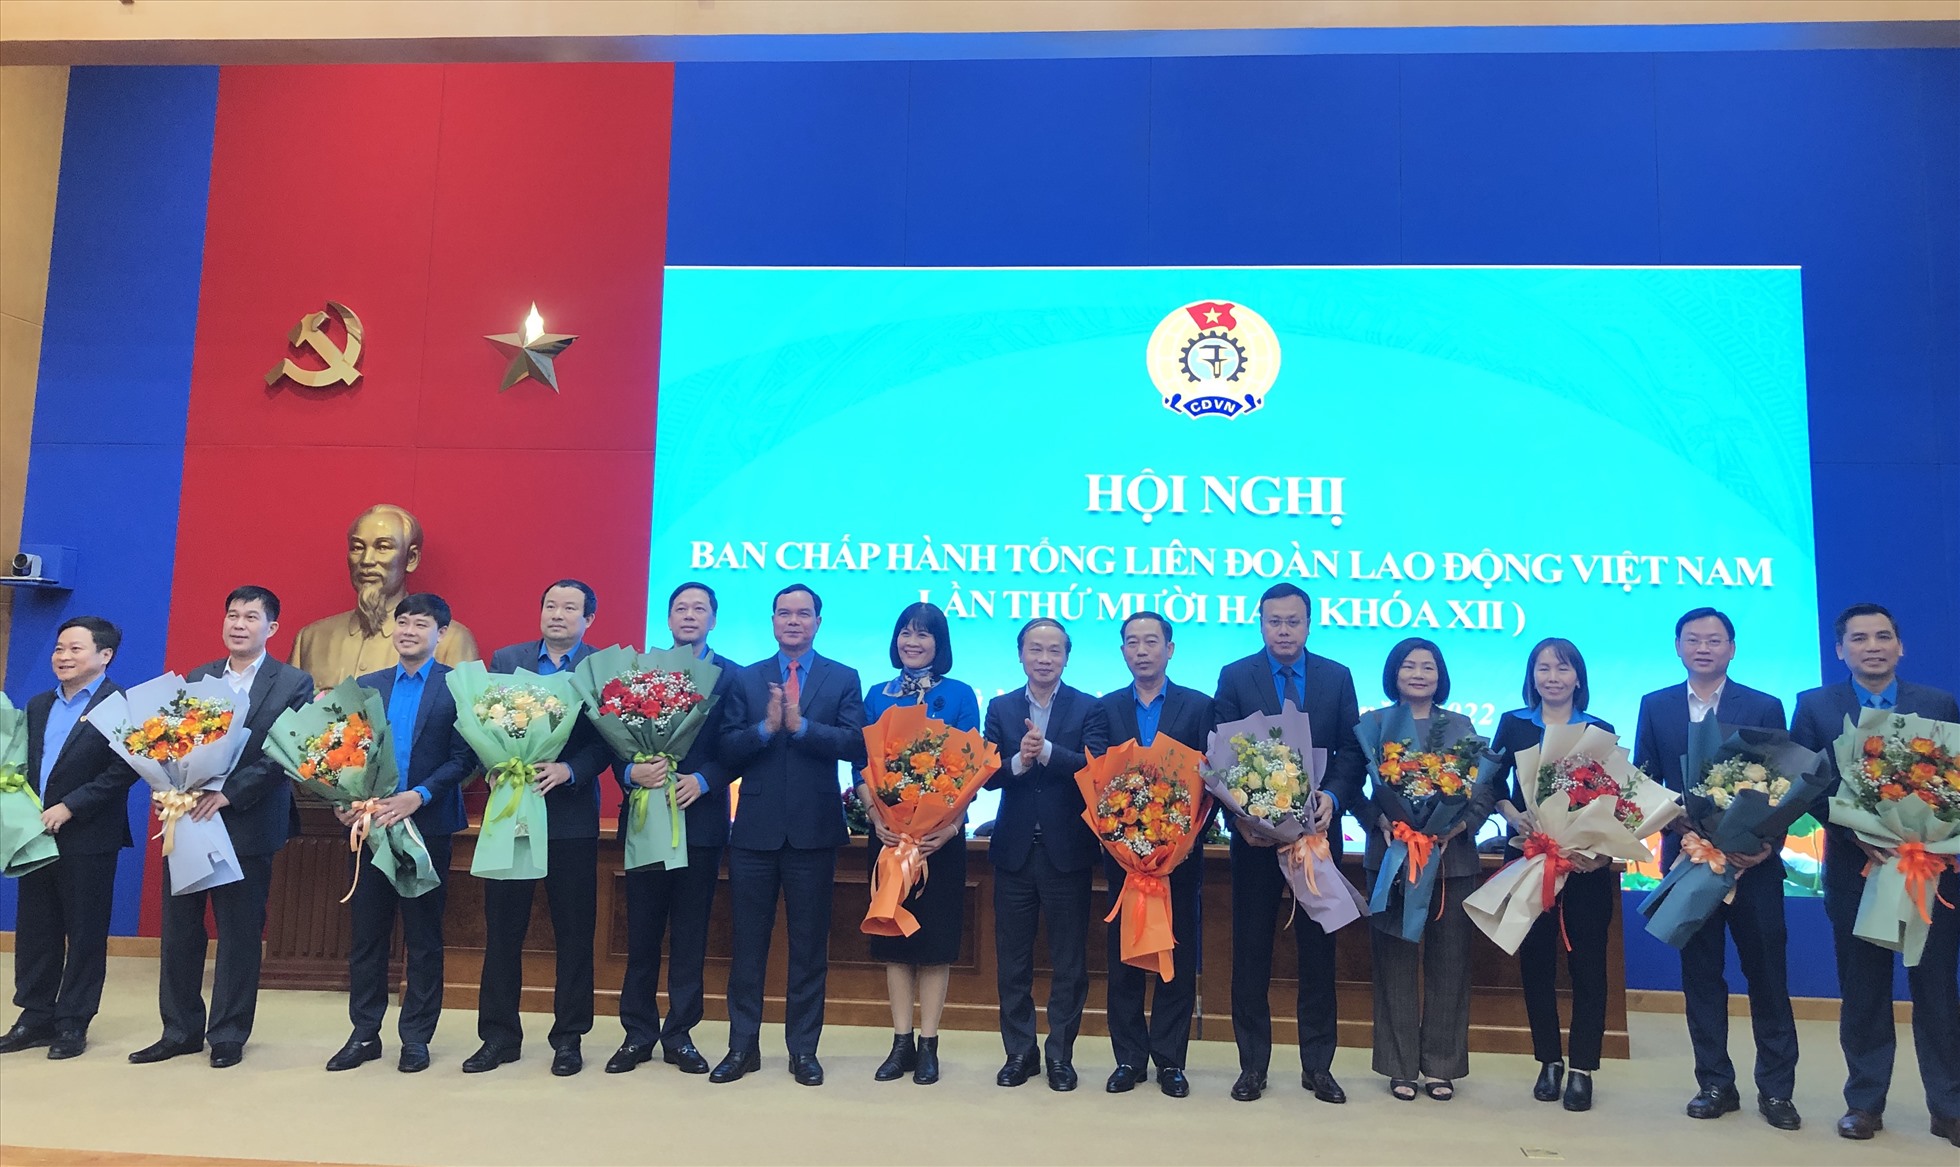 Hai Uỷ viên Đoàn Chủ tịch và 11 Uỷ viên Ban Chấp hành Tổng Liên đoàn Lao động Việt Nam khoá XII mới được bầu bổ sung ra mắt hội nghị. Ảnh: Bảo Hân